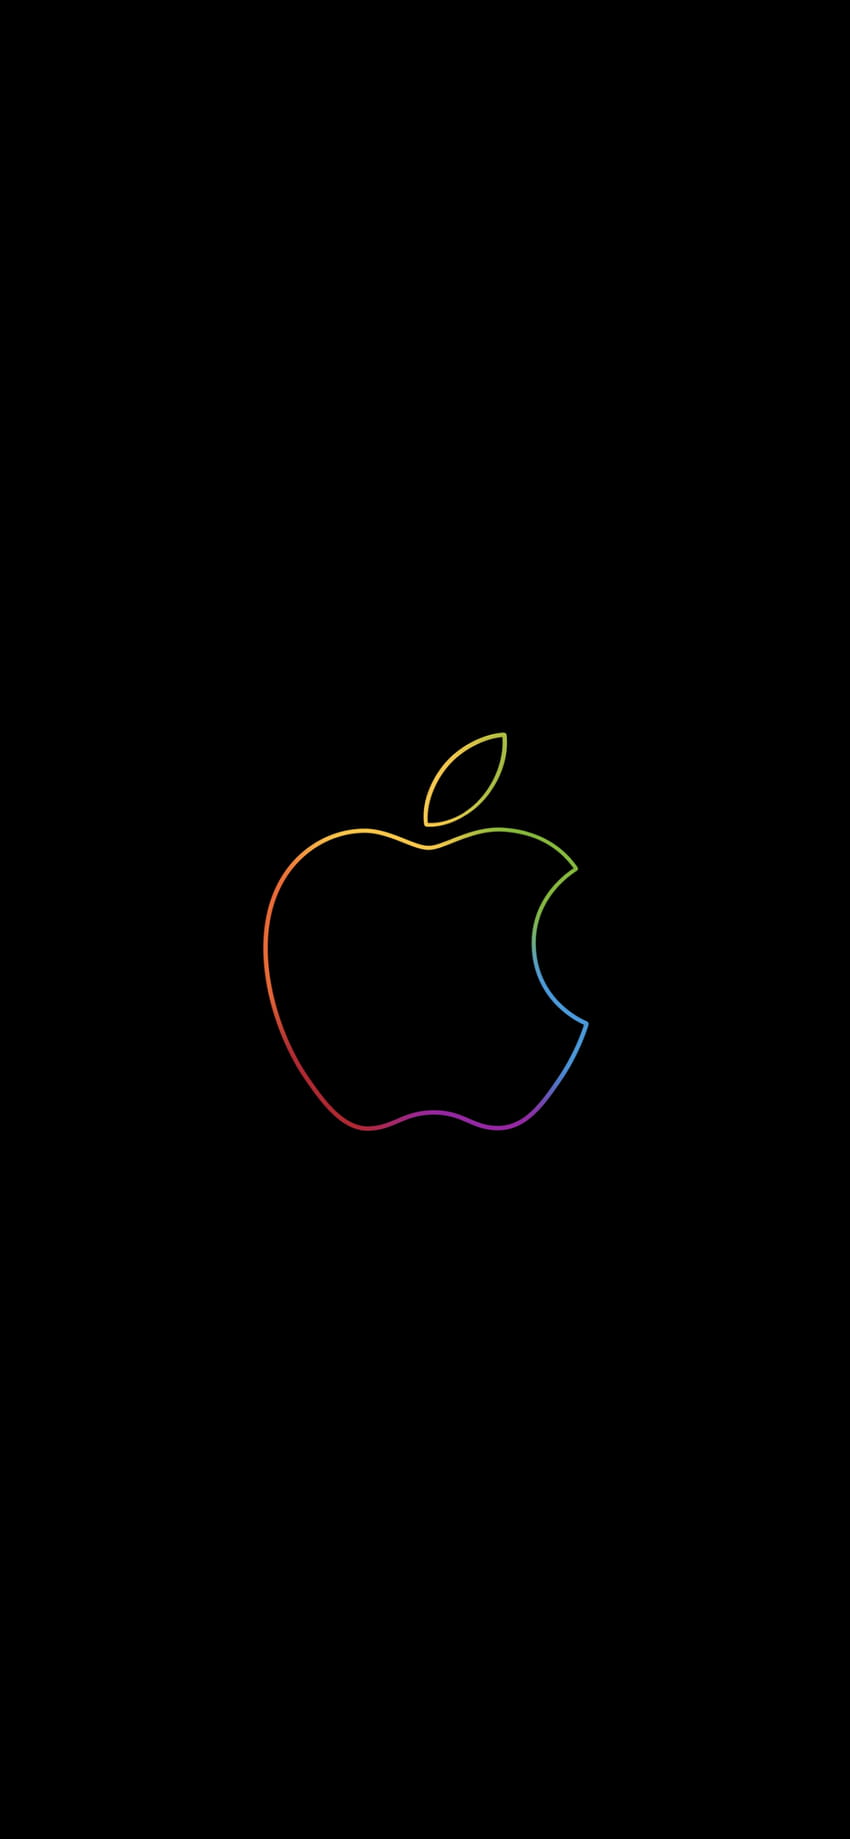 Logotipo de Apple, Vistoso, Contorno, negro, iPad, Tecnología, Apple logo iphone 12 pro max fondo de pantalla del teléfono